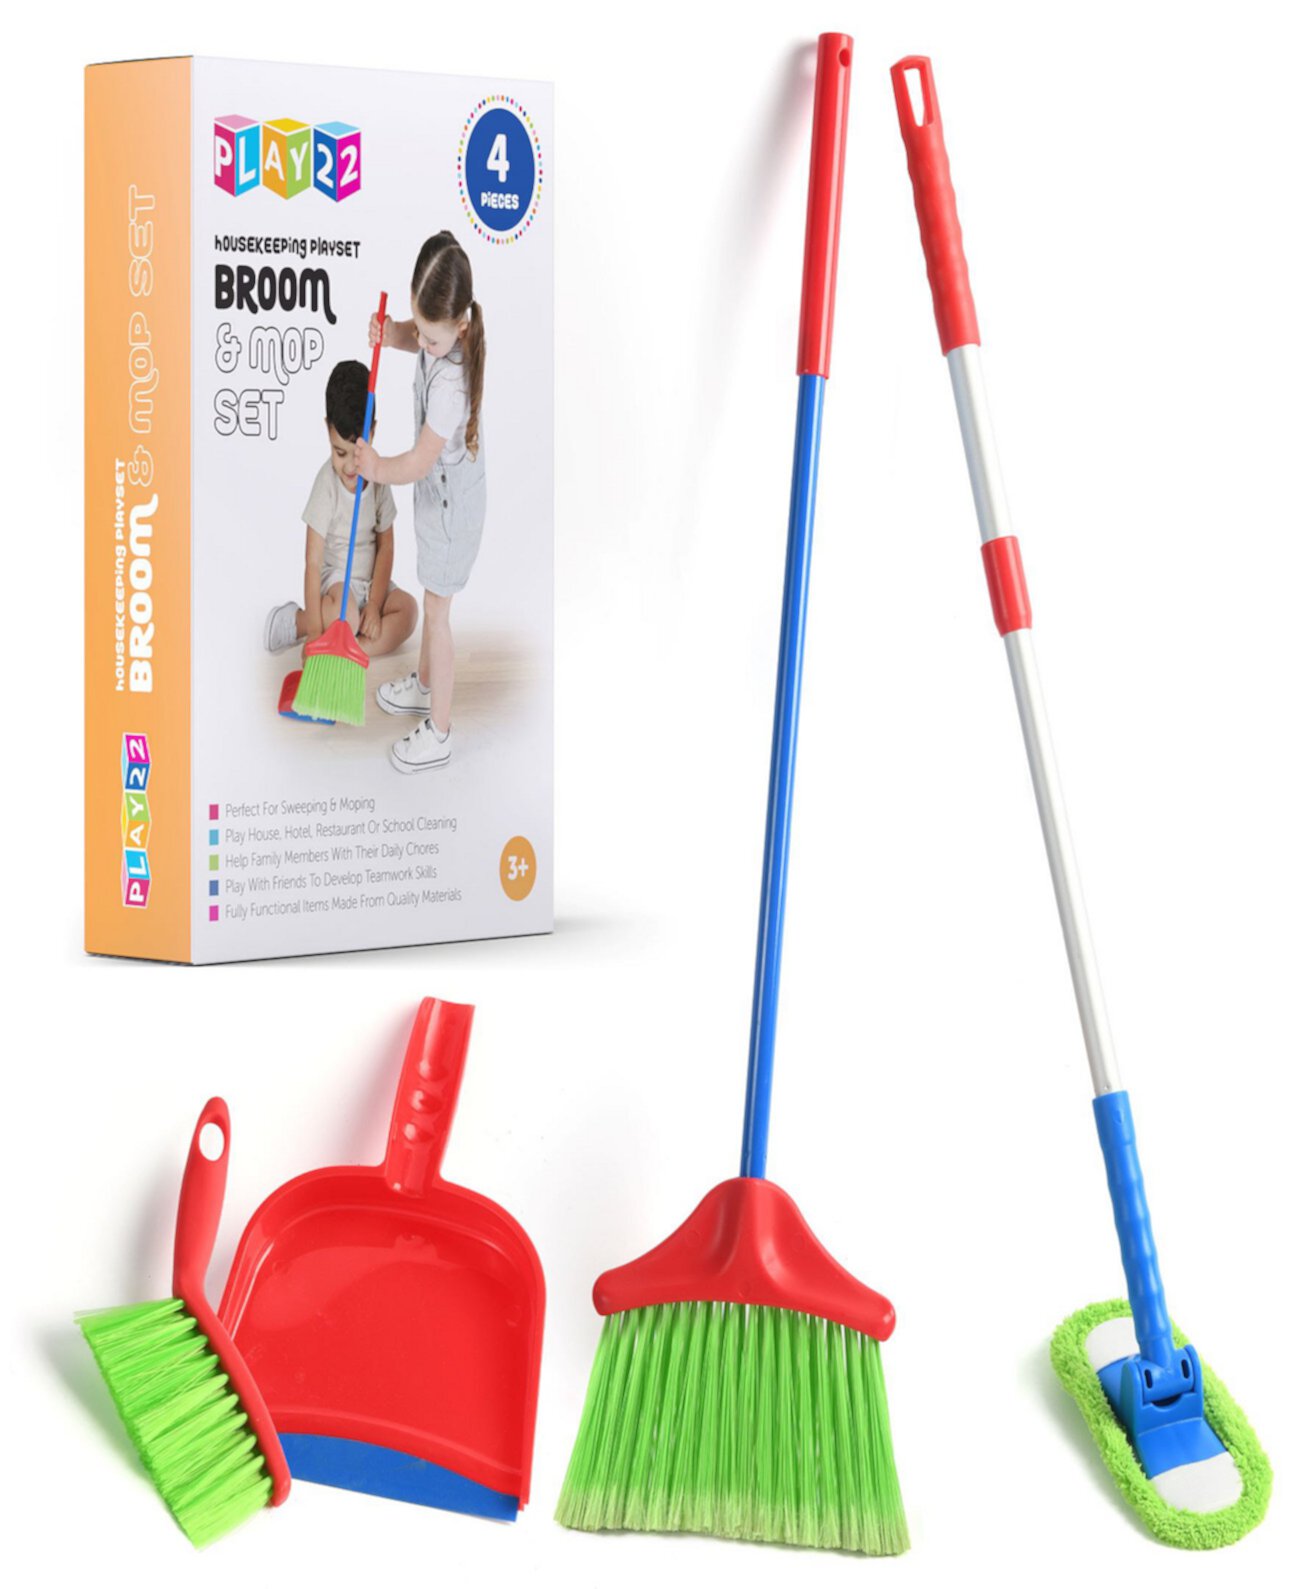 Детский набор для уборки включает в себя метлу, швабру и щетку для сбора пыли. Play22